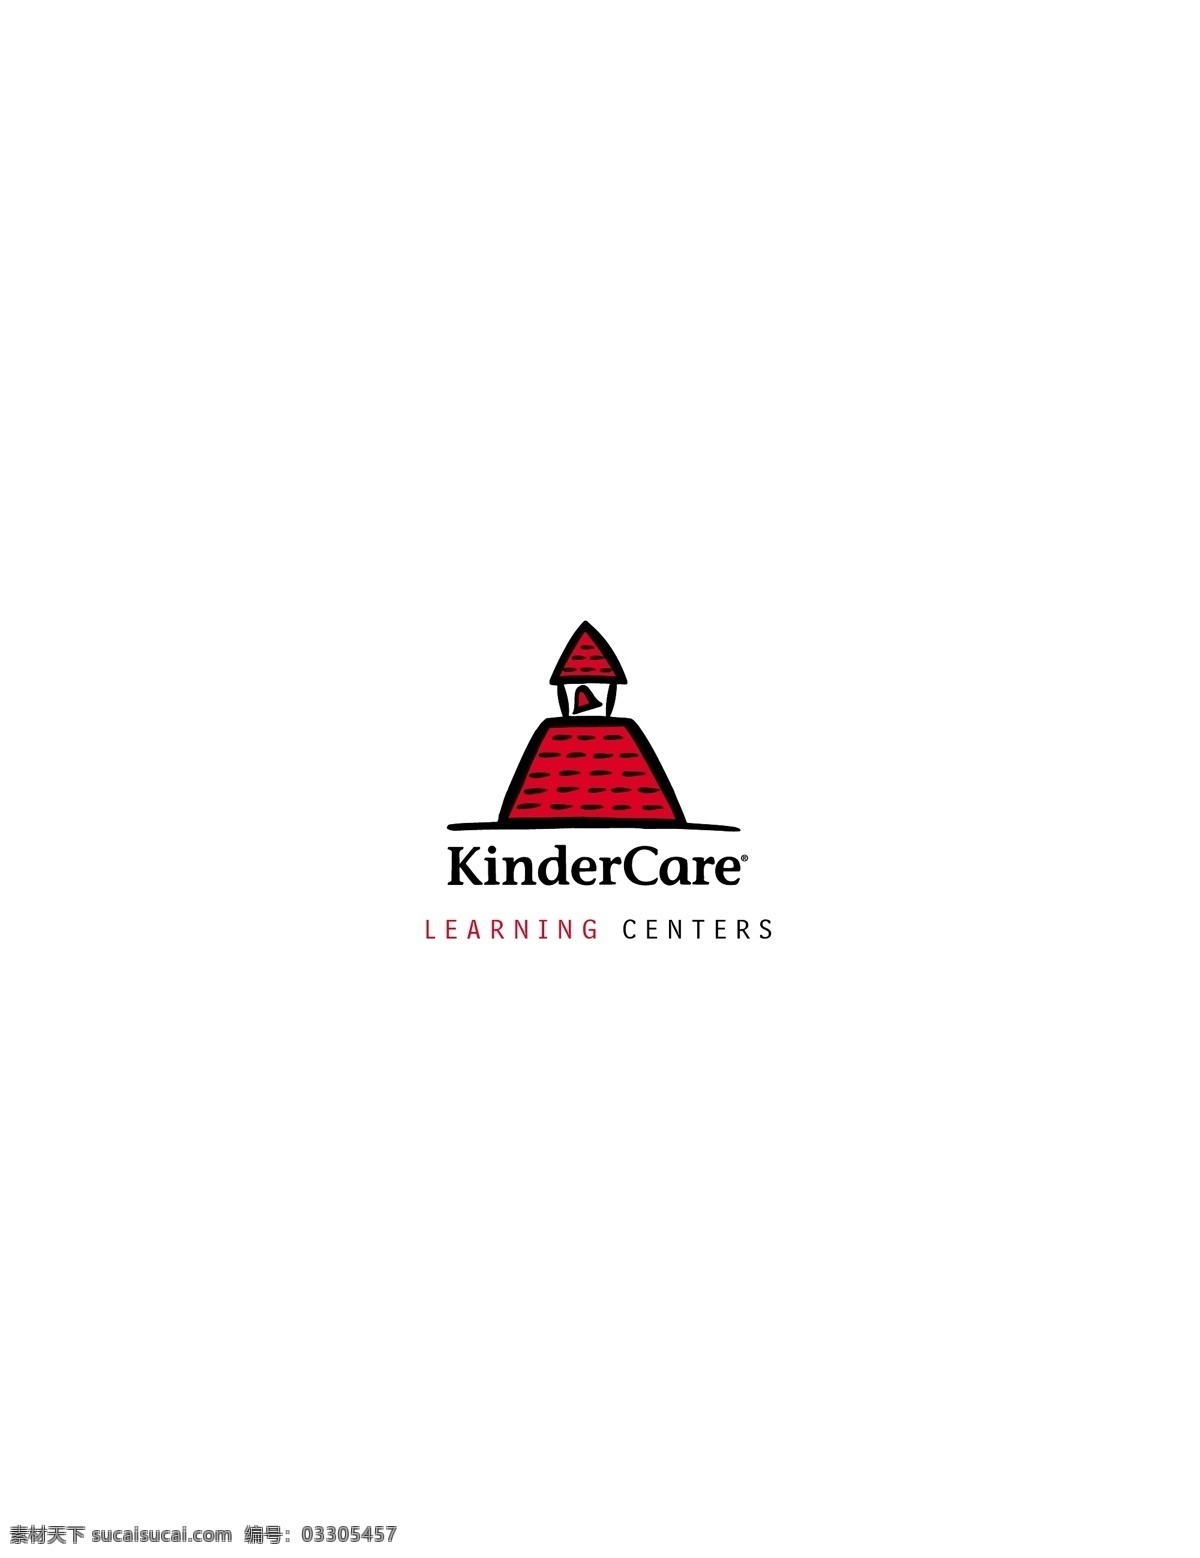 kindercarelearningcenters logo 设计欣赏 高等 学府 标志 标志设计 欣赏 矢量下载 网页矢量 商业矢量 logo大全 红色